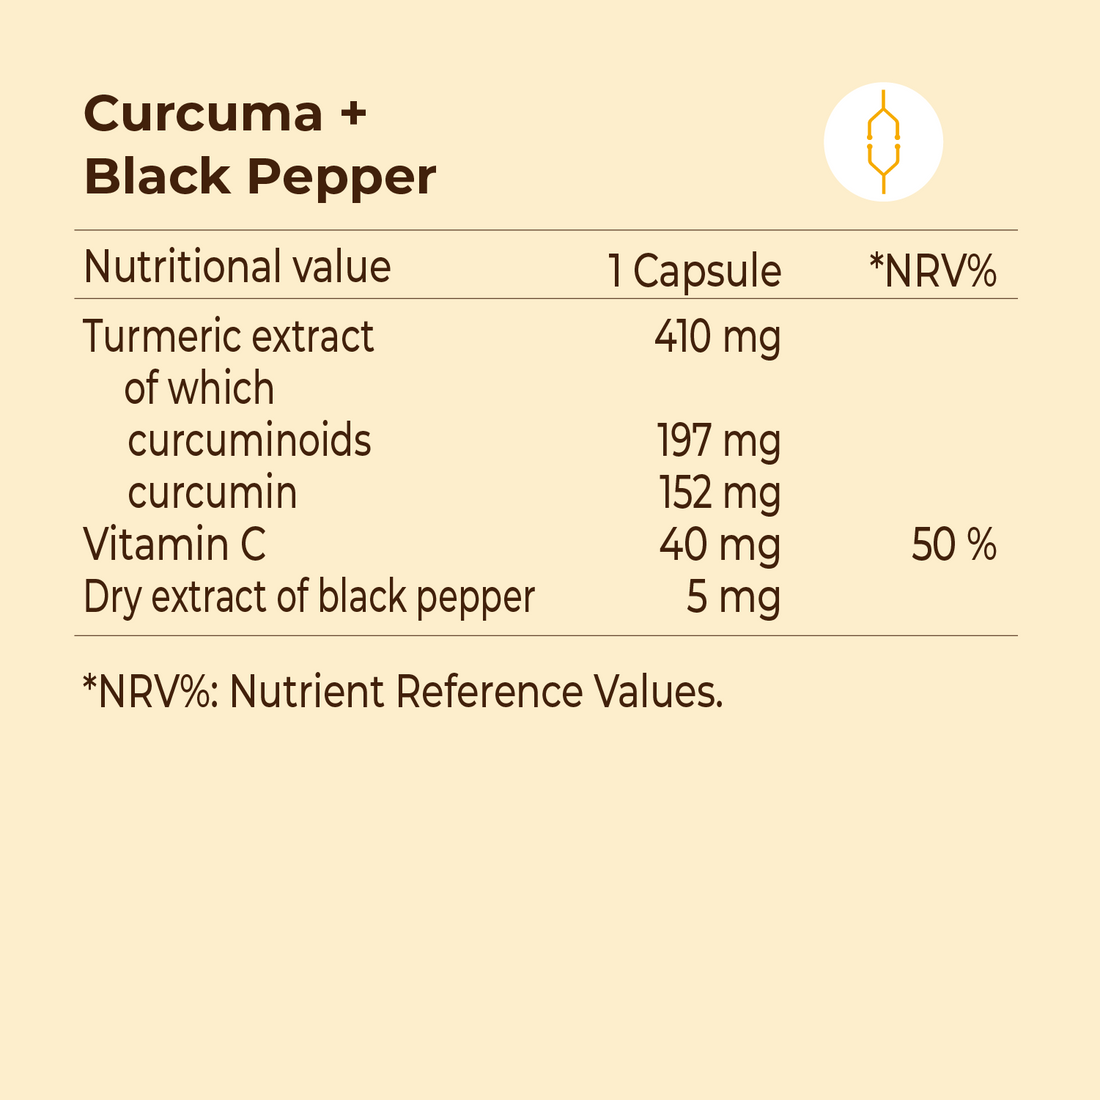 Curcuma + Black Pepper